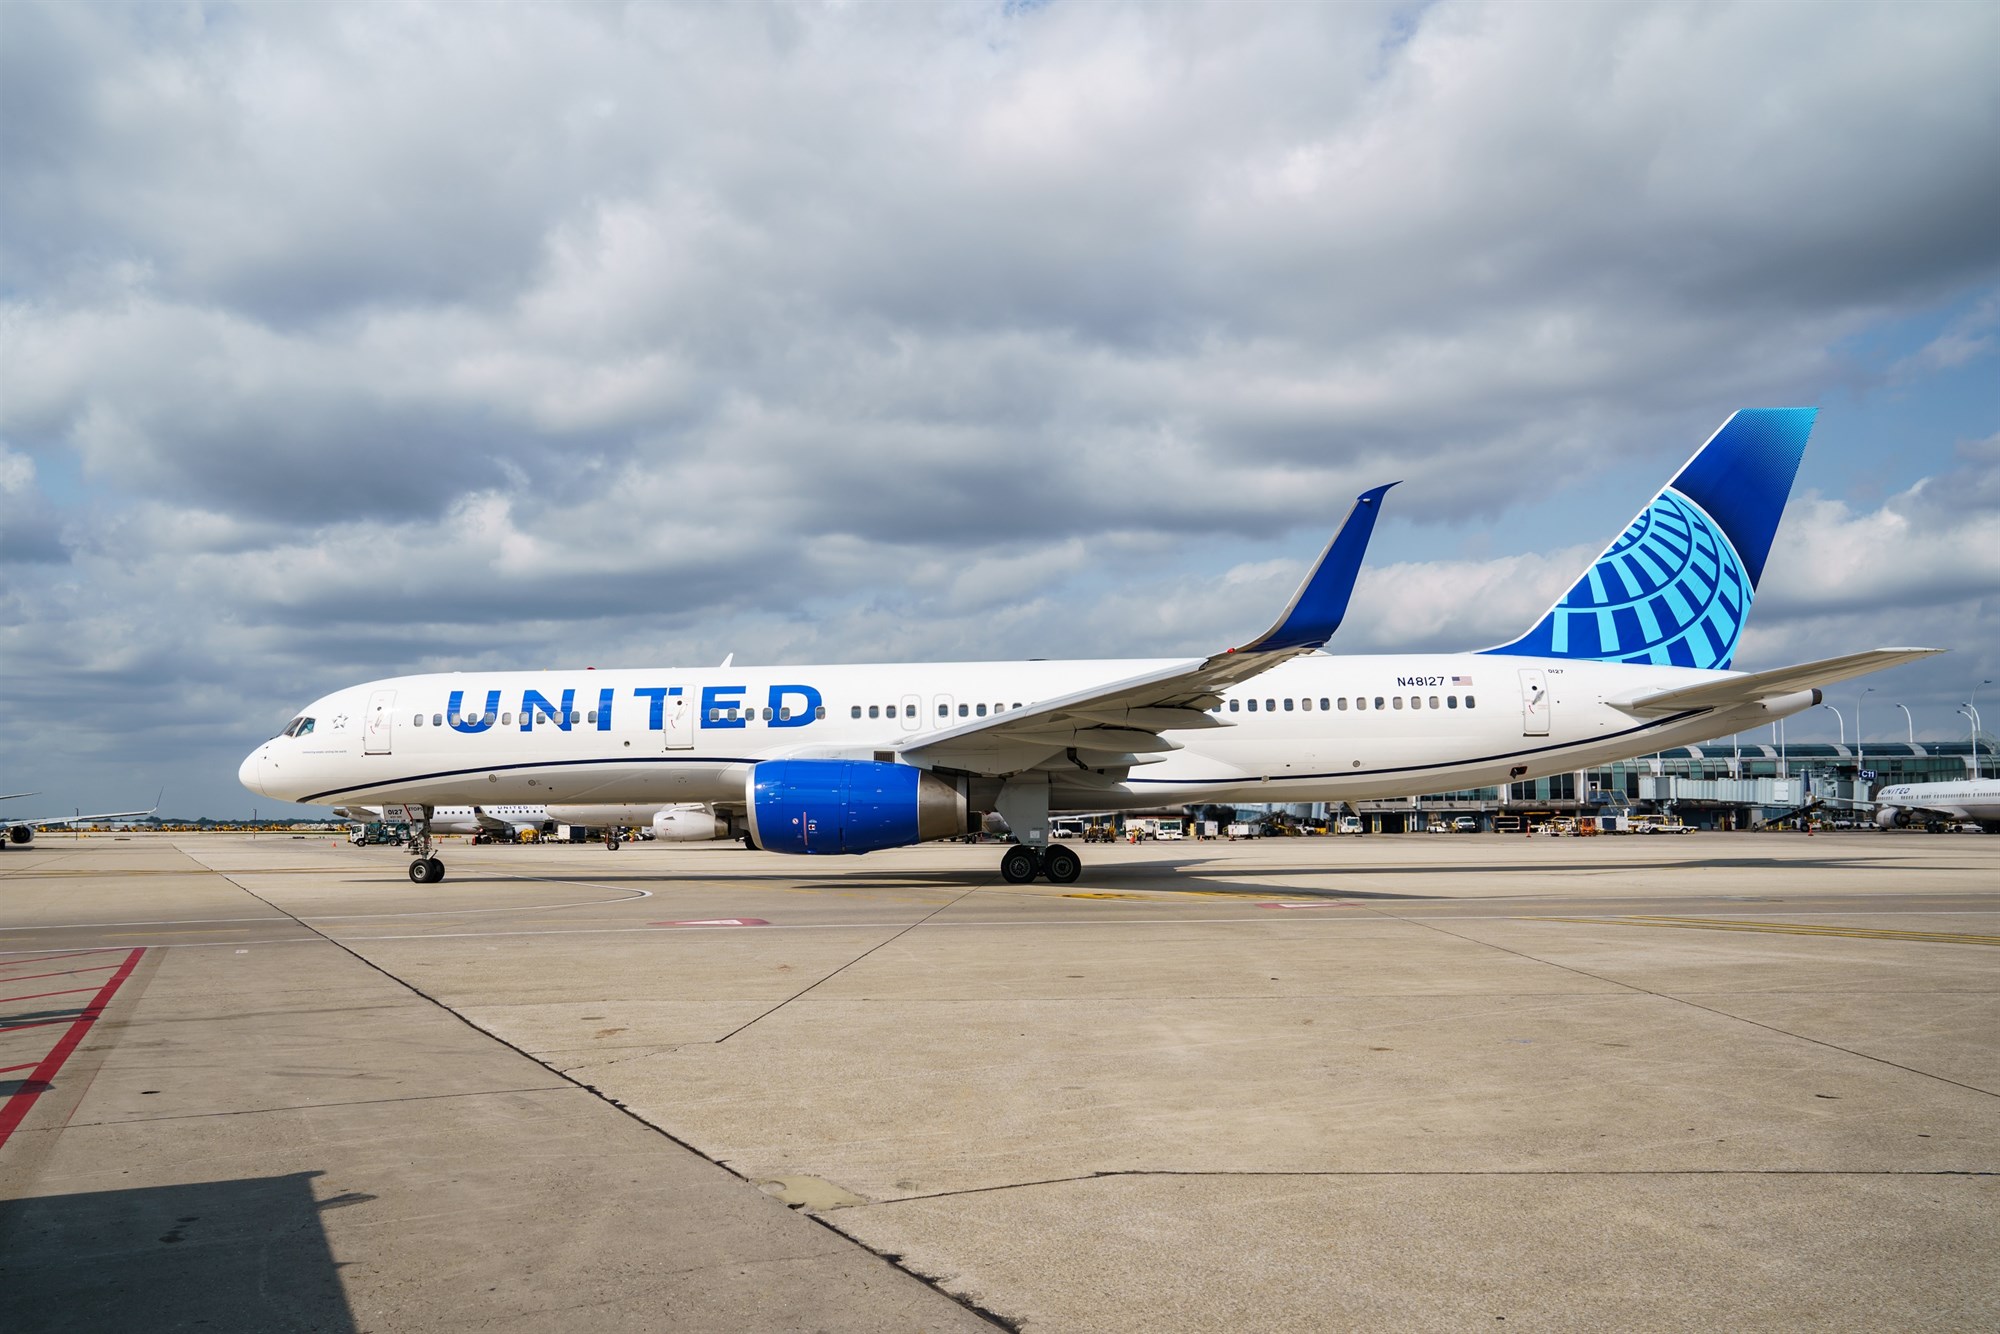 Flug United Airlines milli Keflavíkurflugvallar og New York/Newark hafið á ný